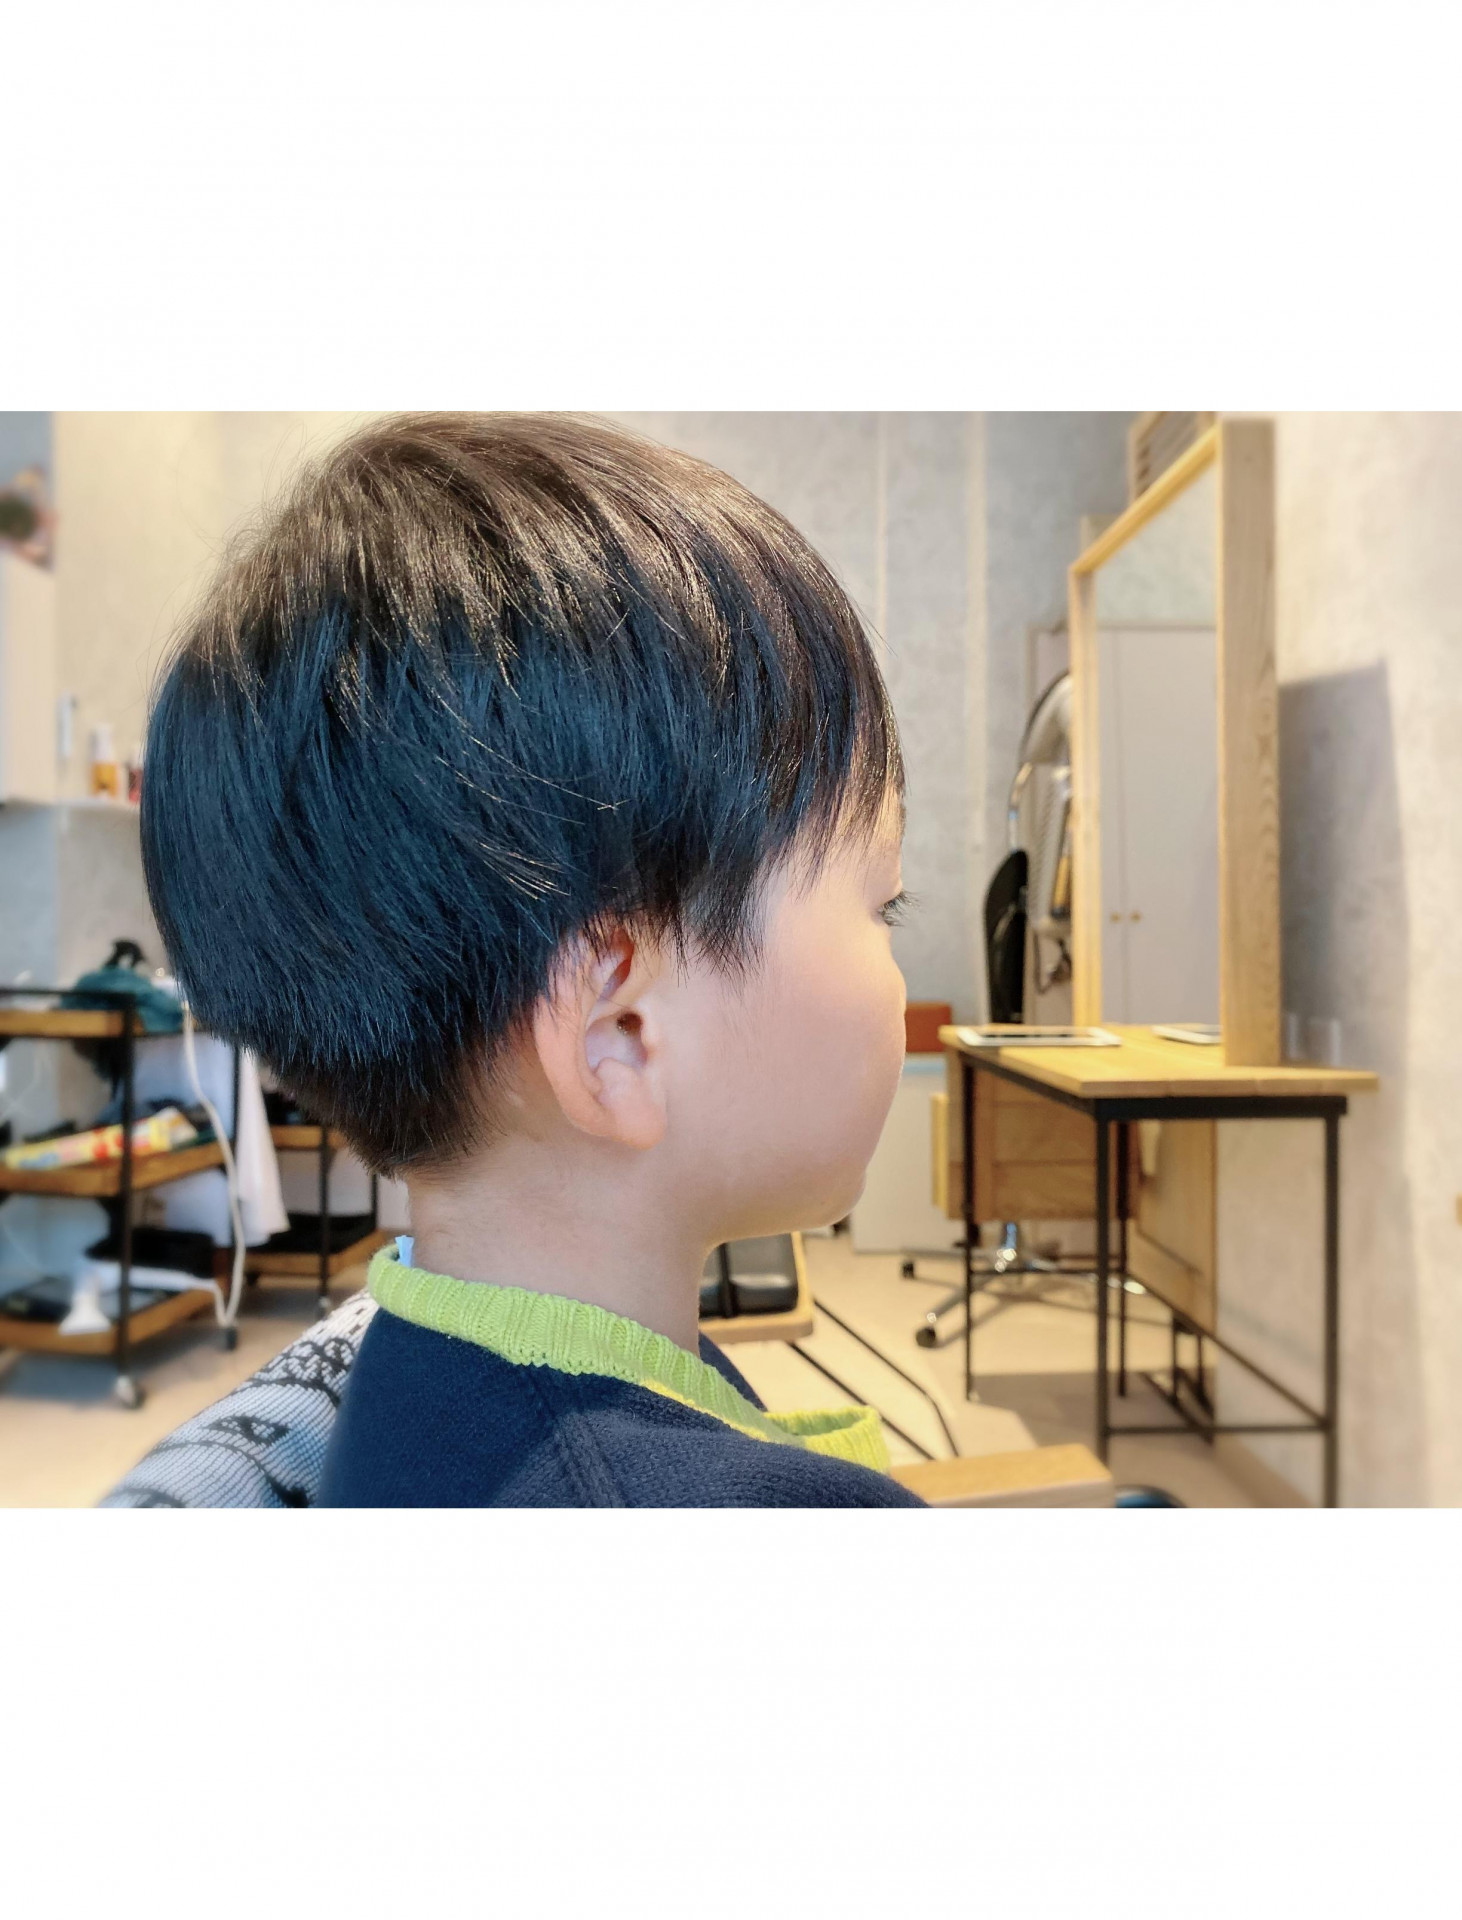 Boy 小学生男の子カット ツーブロック 小田急相模原にある美容室が更新しているブログをぜひご覧ください